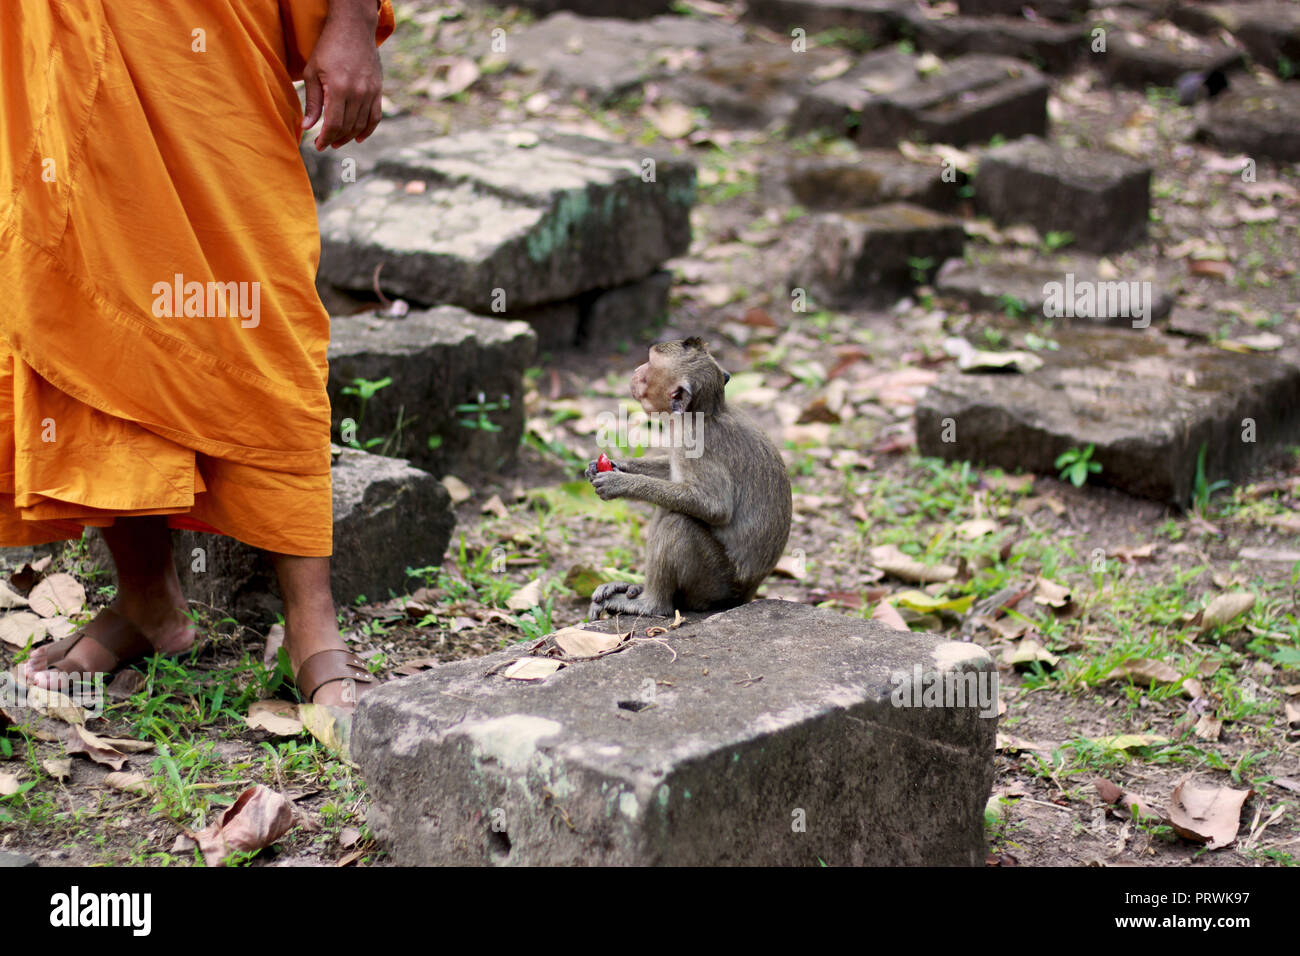 Monkey mangiare la frutta e la visione di un monaco buddista che indossa vesti arancione in Angkor Wat, Siem Reap, Cambogia, in Asia. Foto Stock